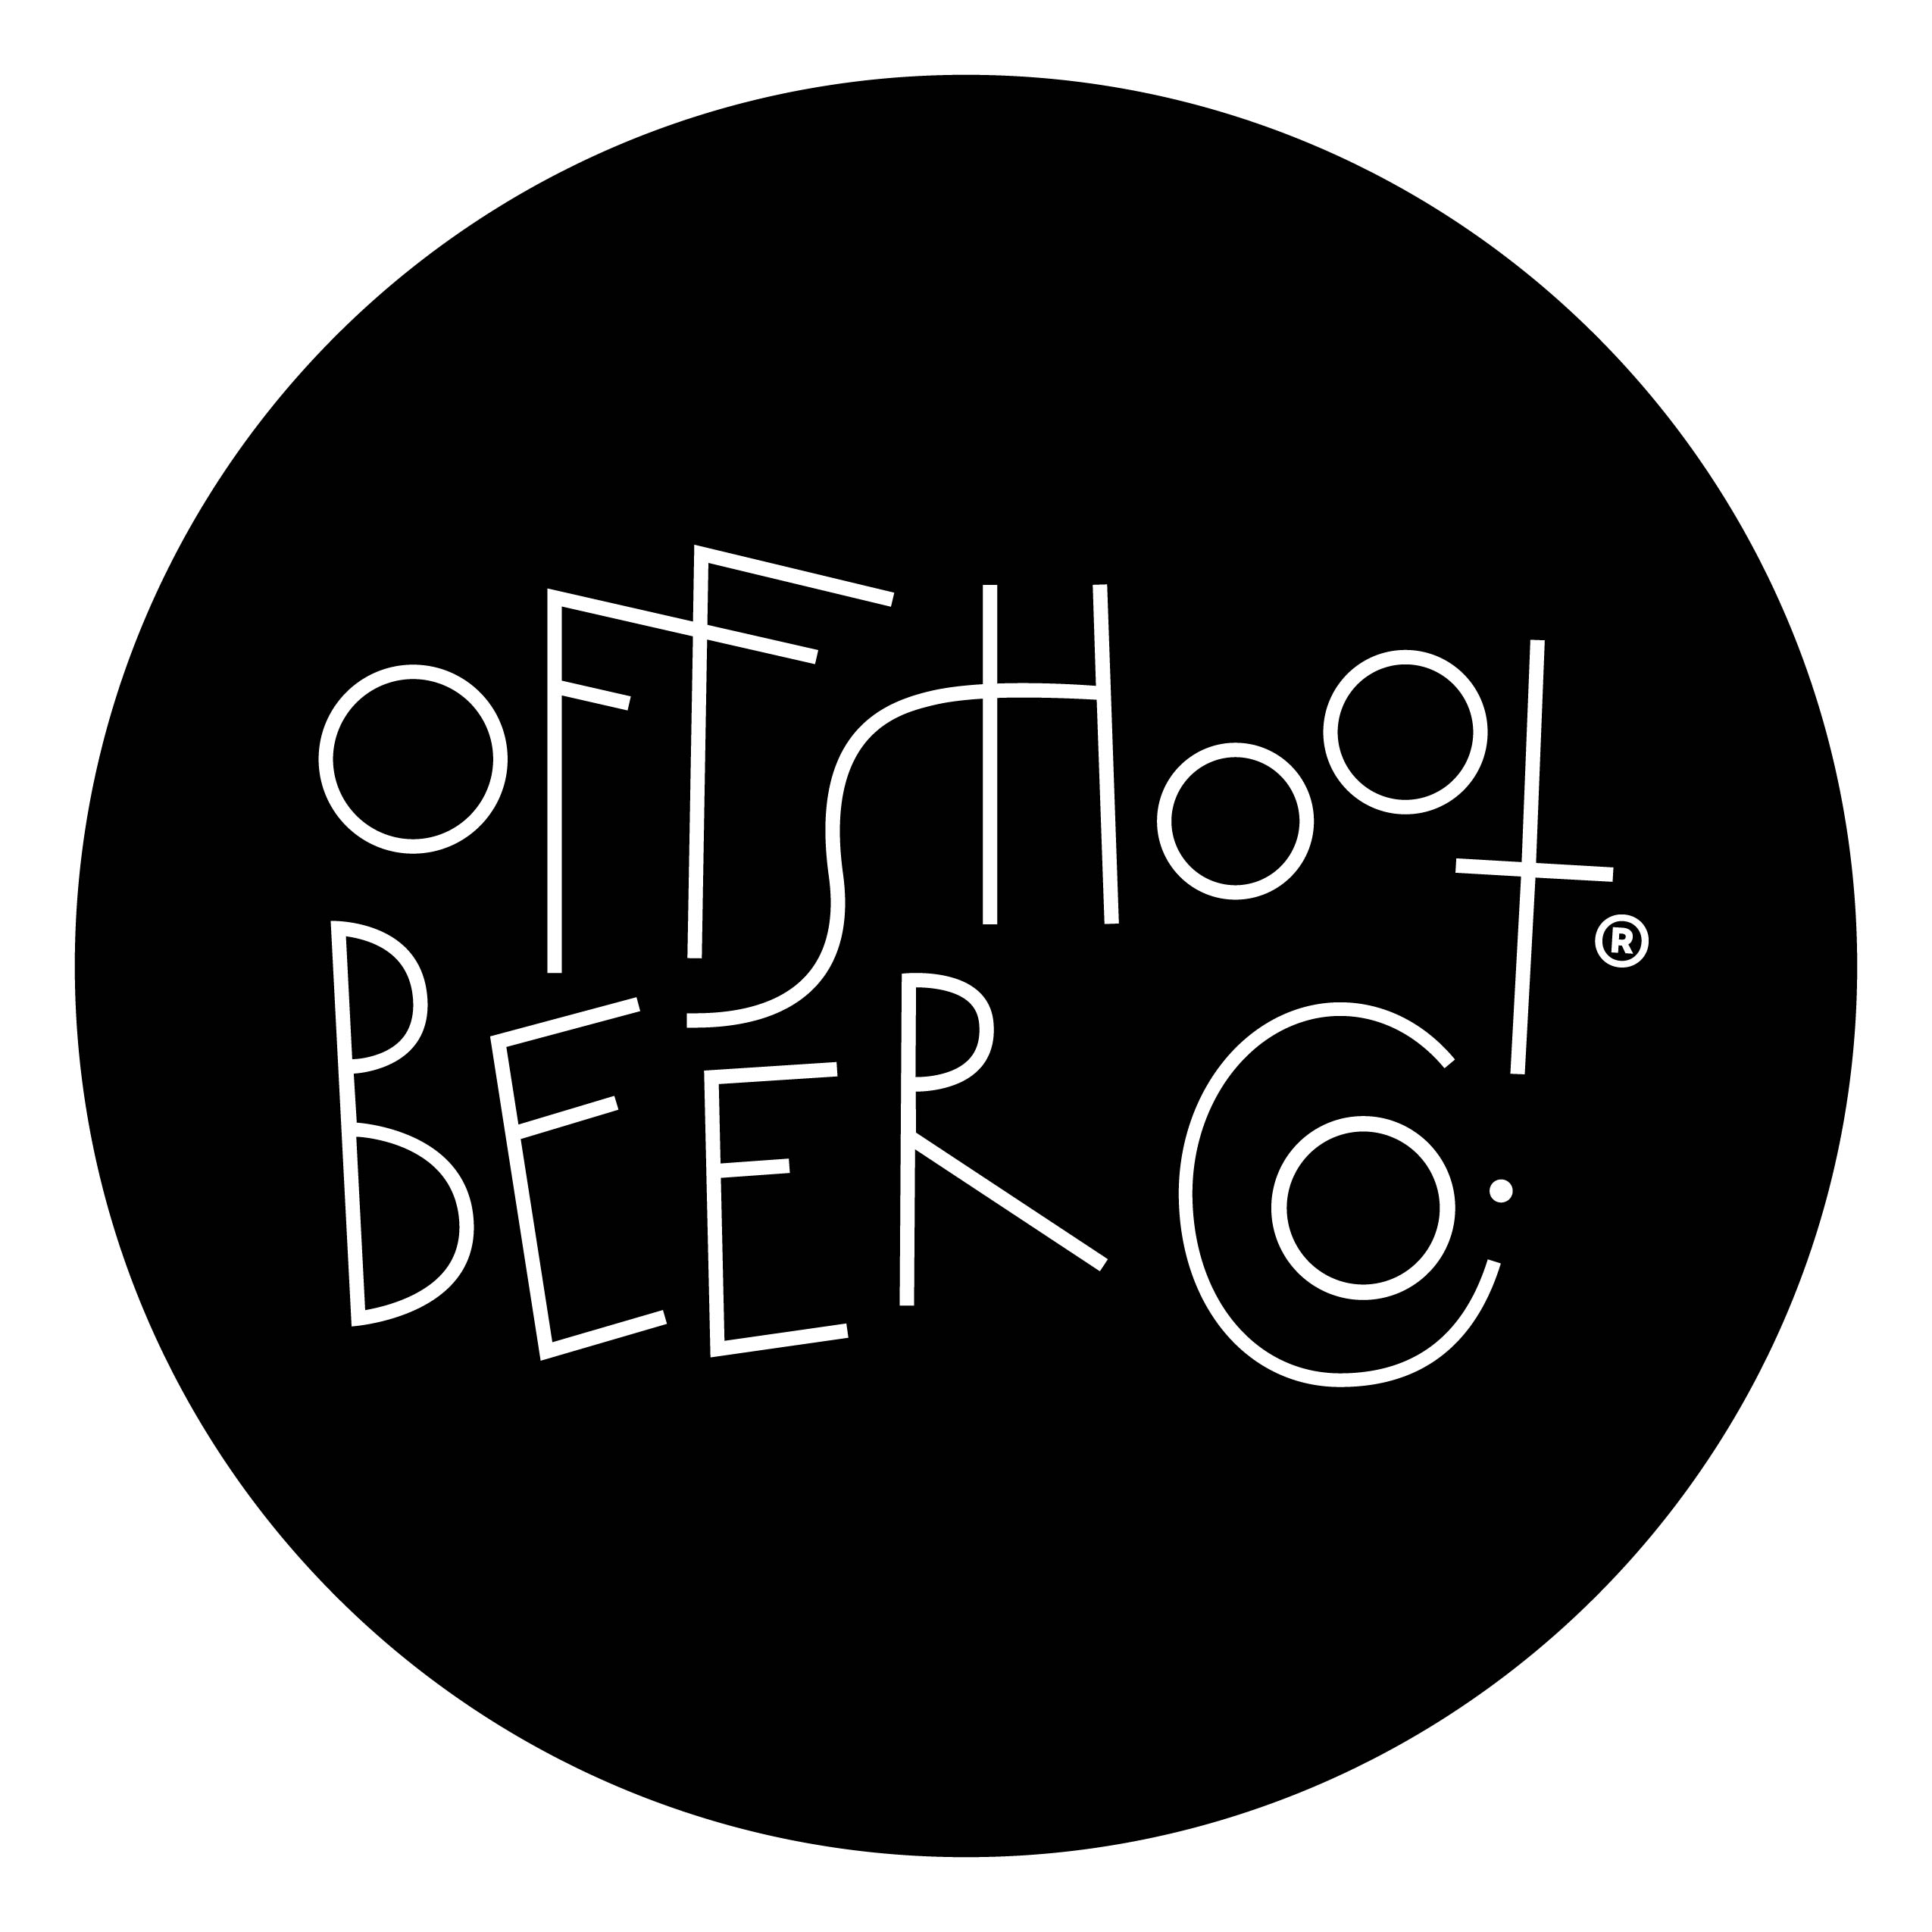 Offshoot Beer Co.